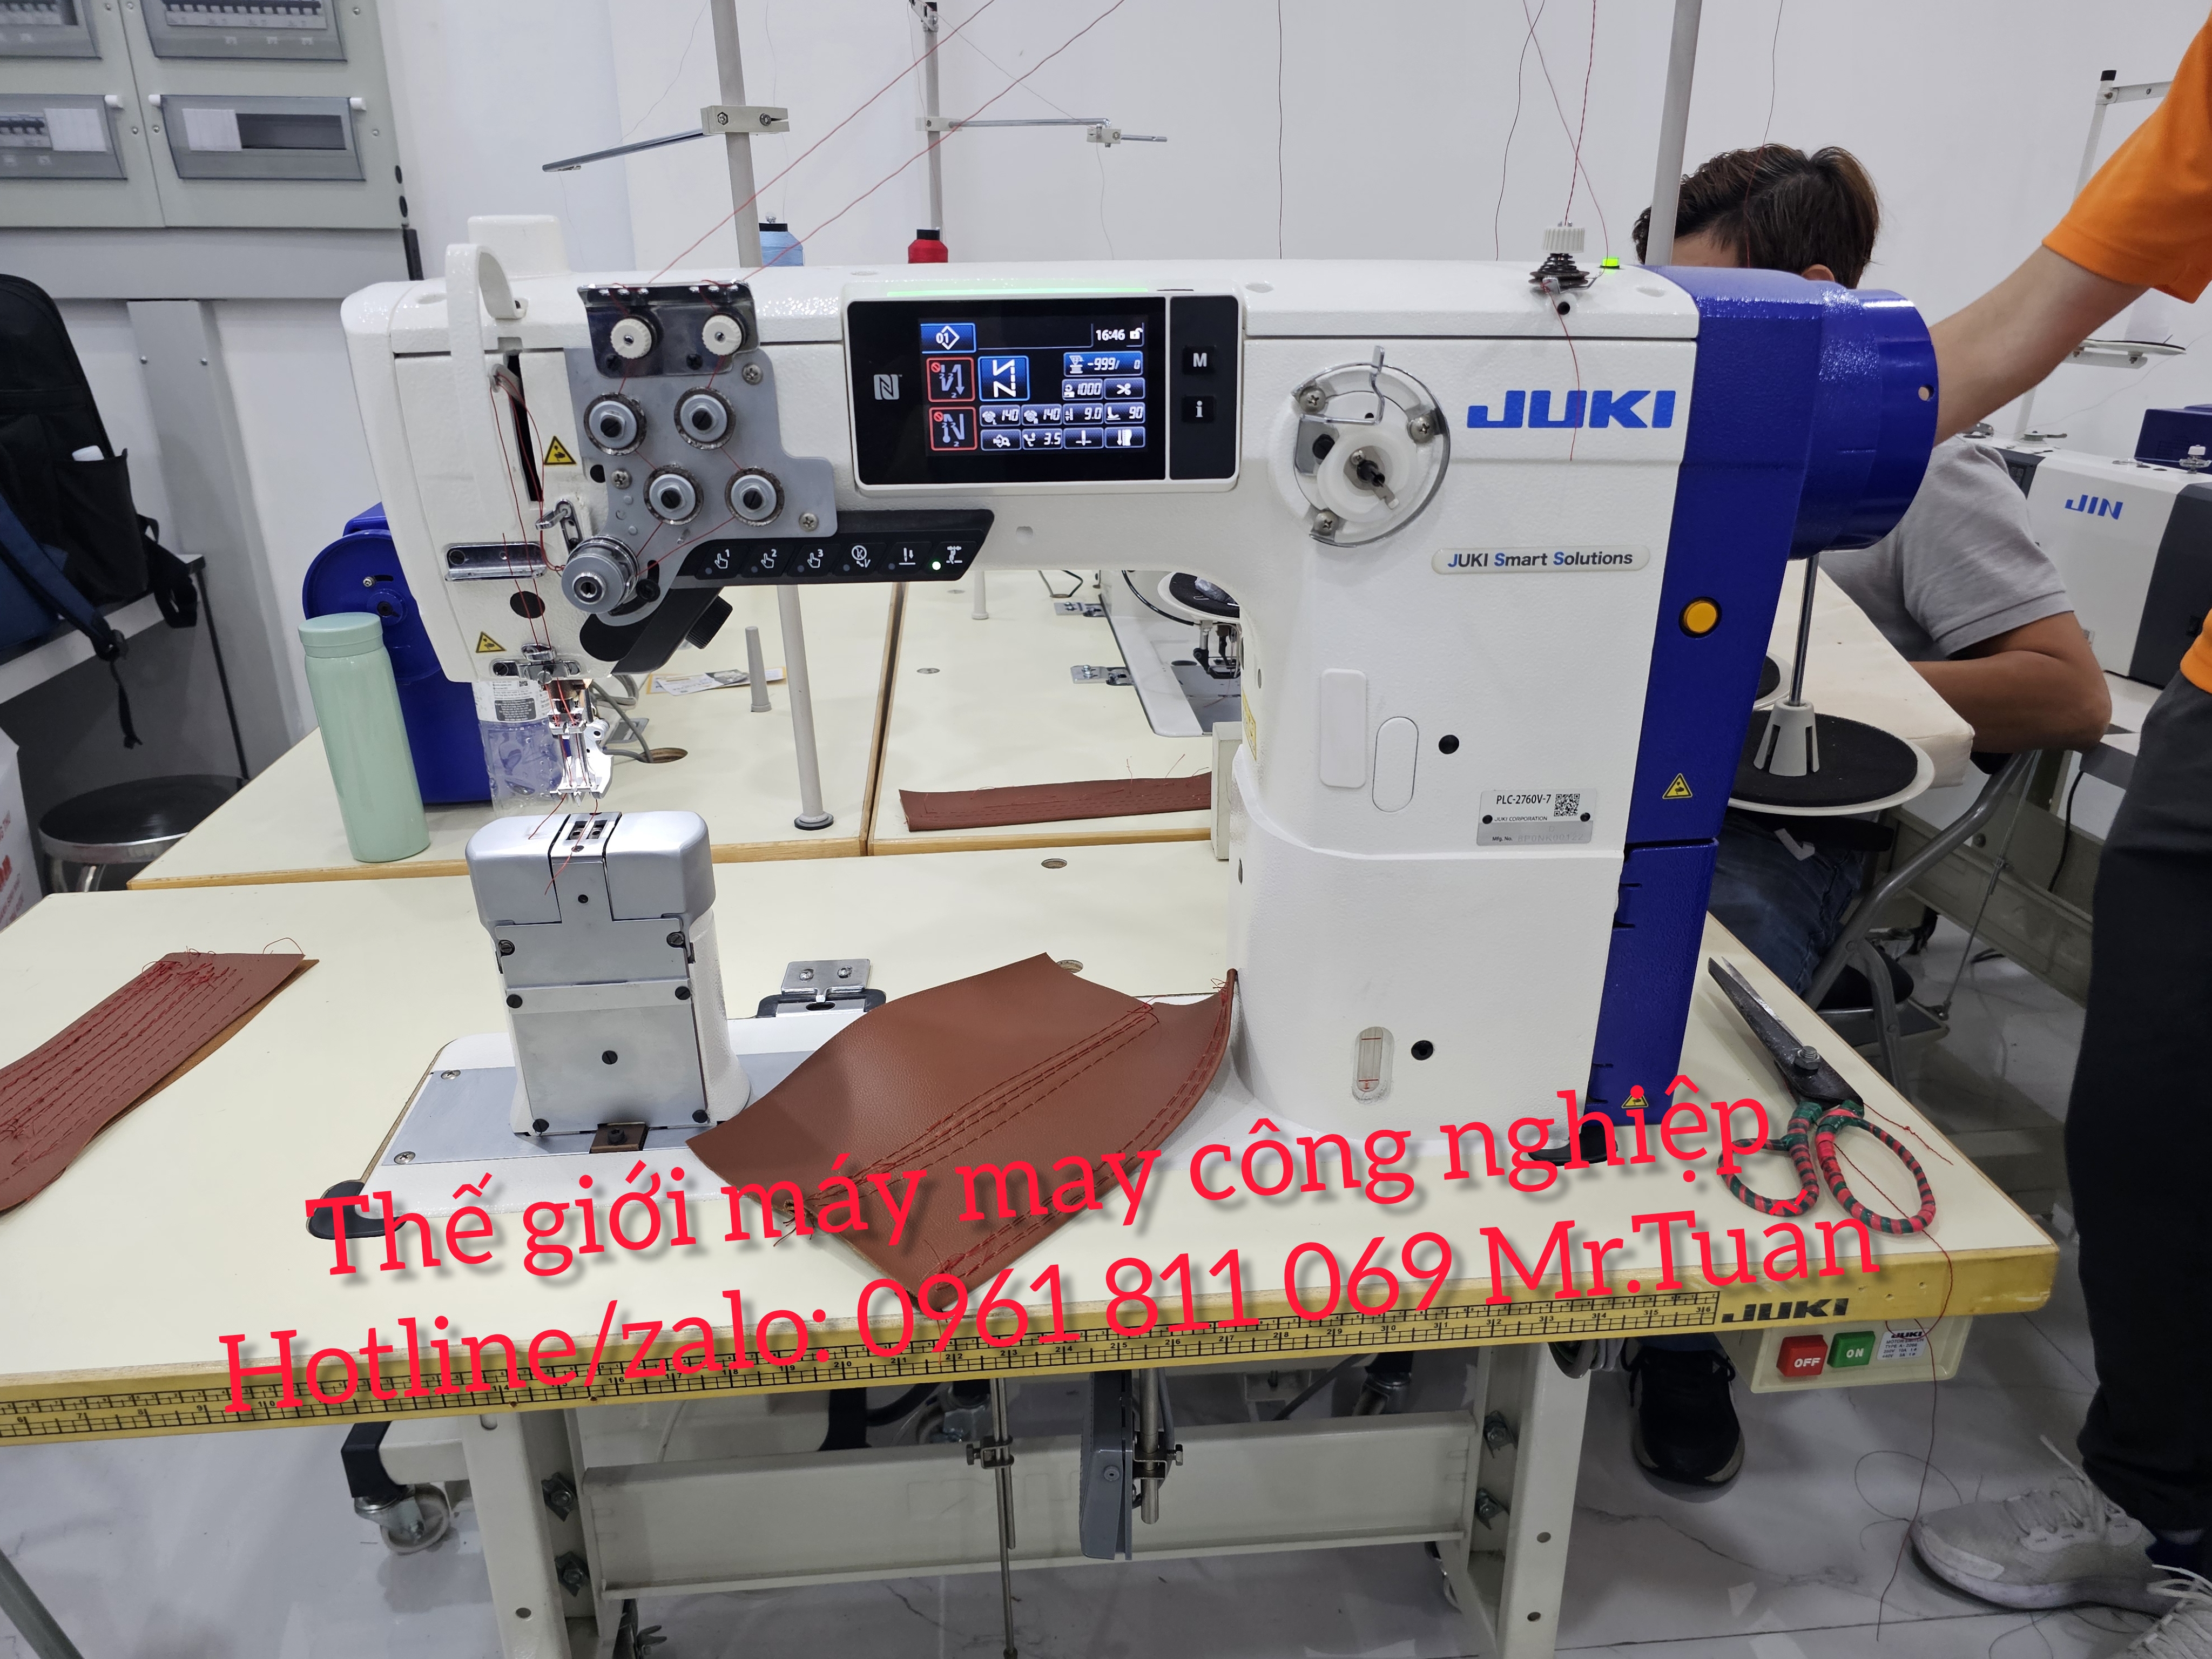 Đại lý phân phối máy may hãng Juki tại TP.HCM